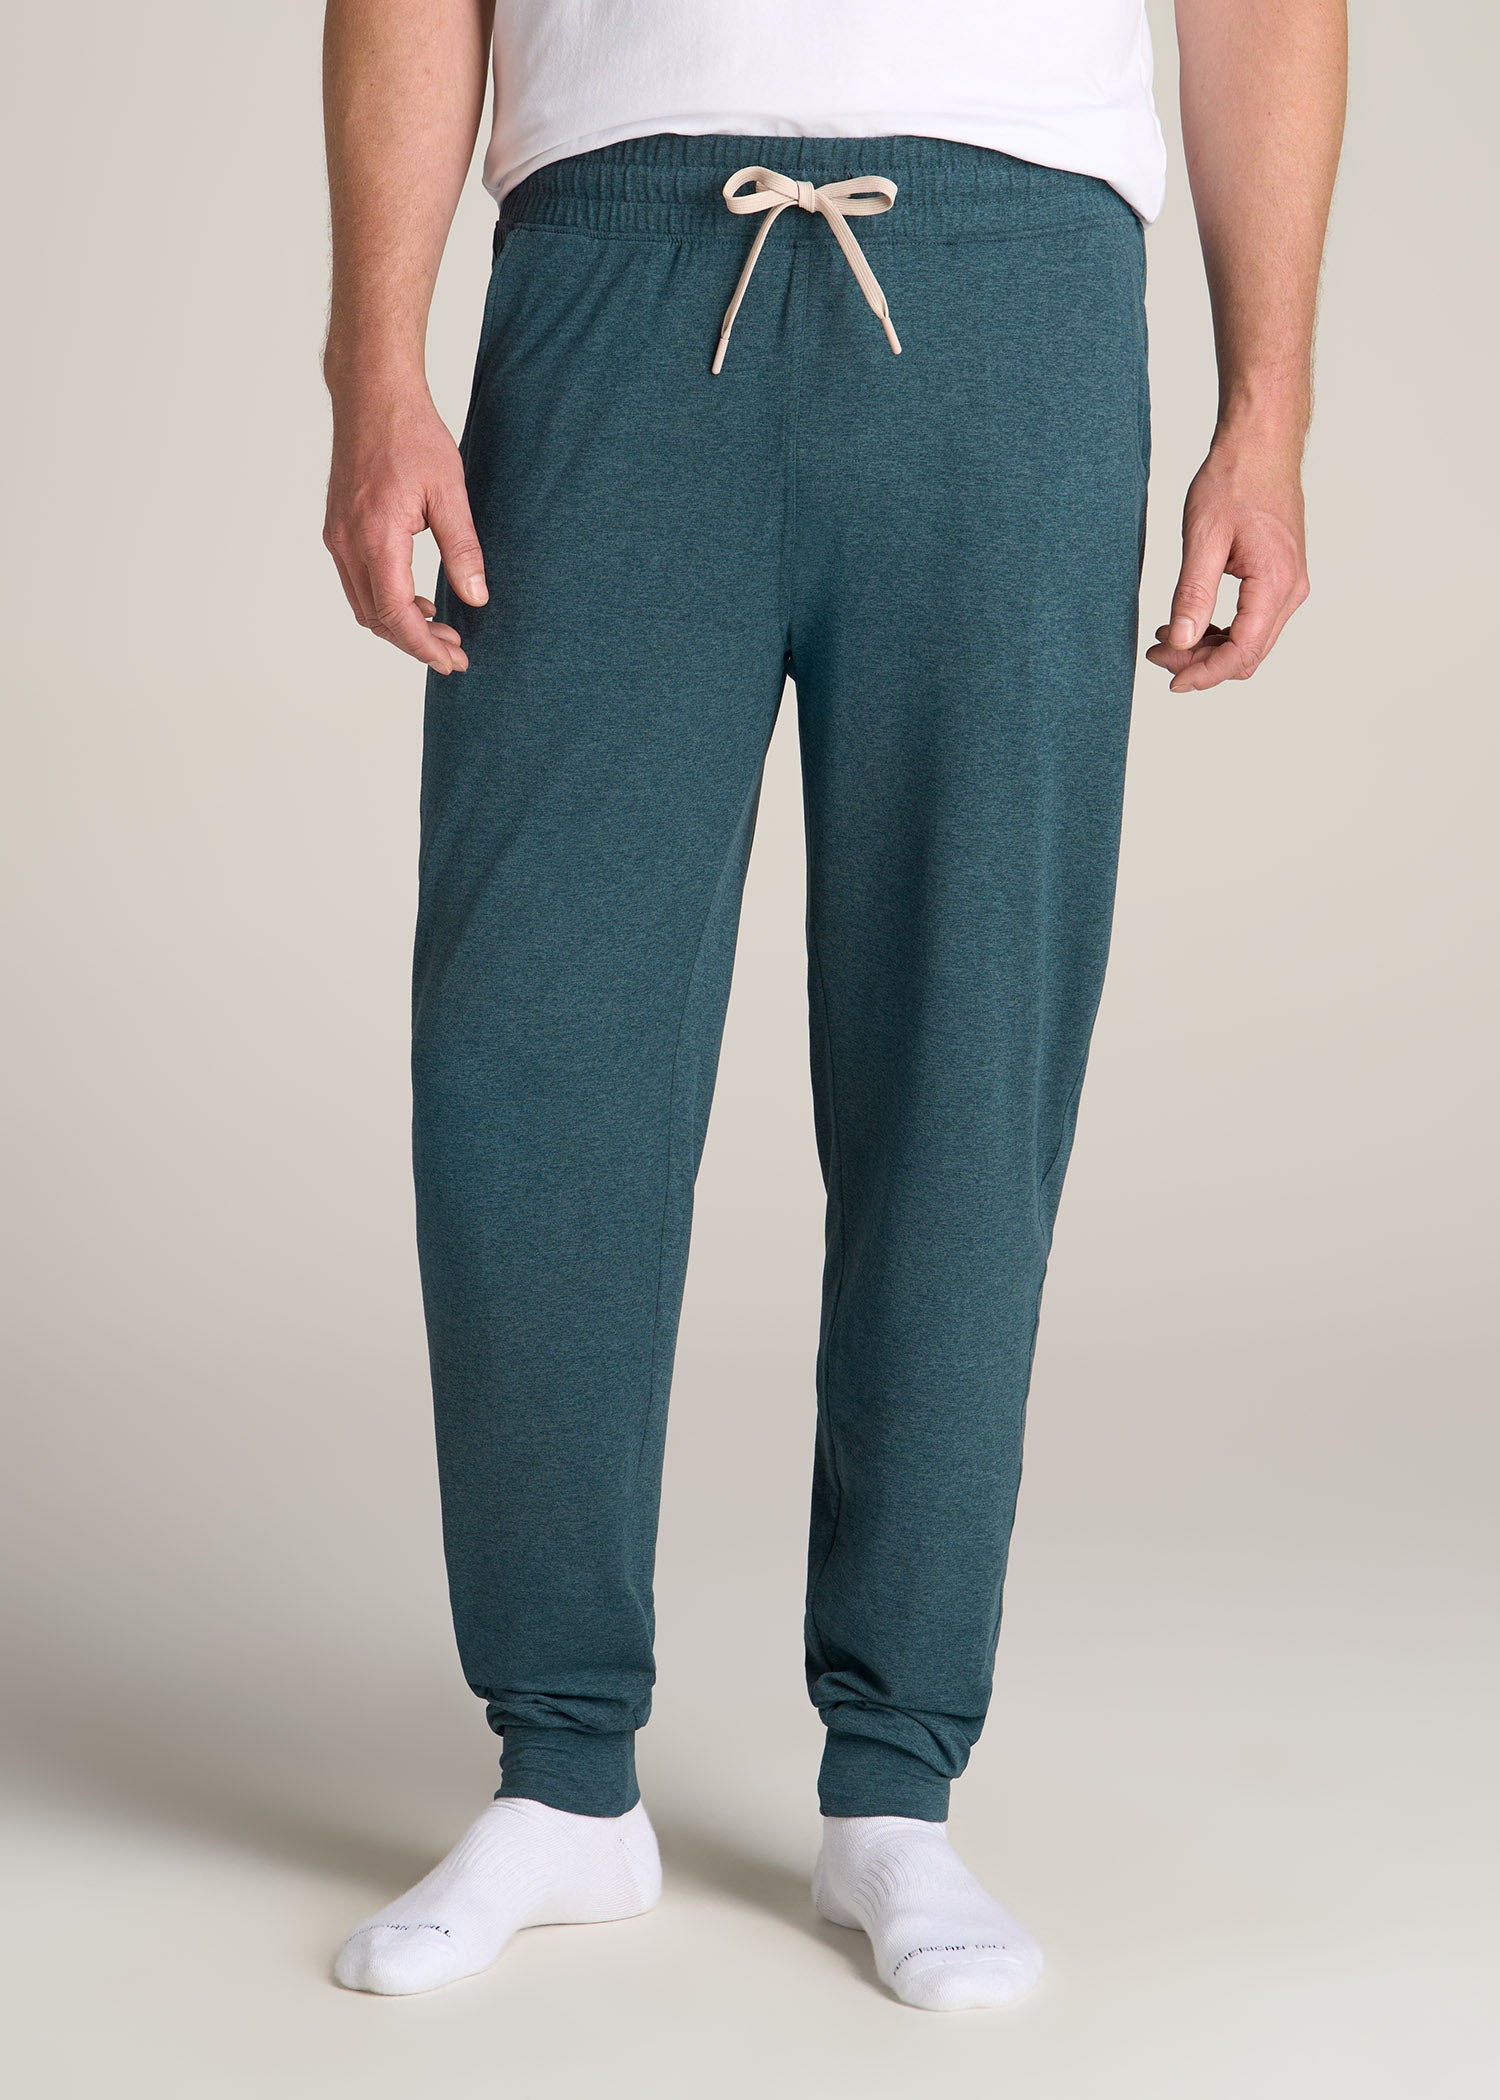 Men's Logo Waist Fleece Lounge Shorts - Men's Loungewear & Pajamas